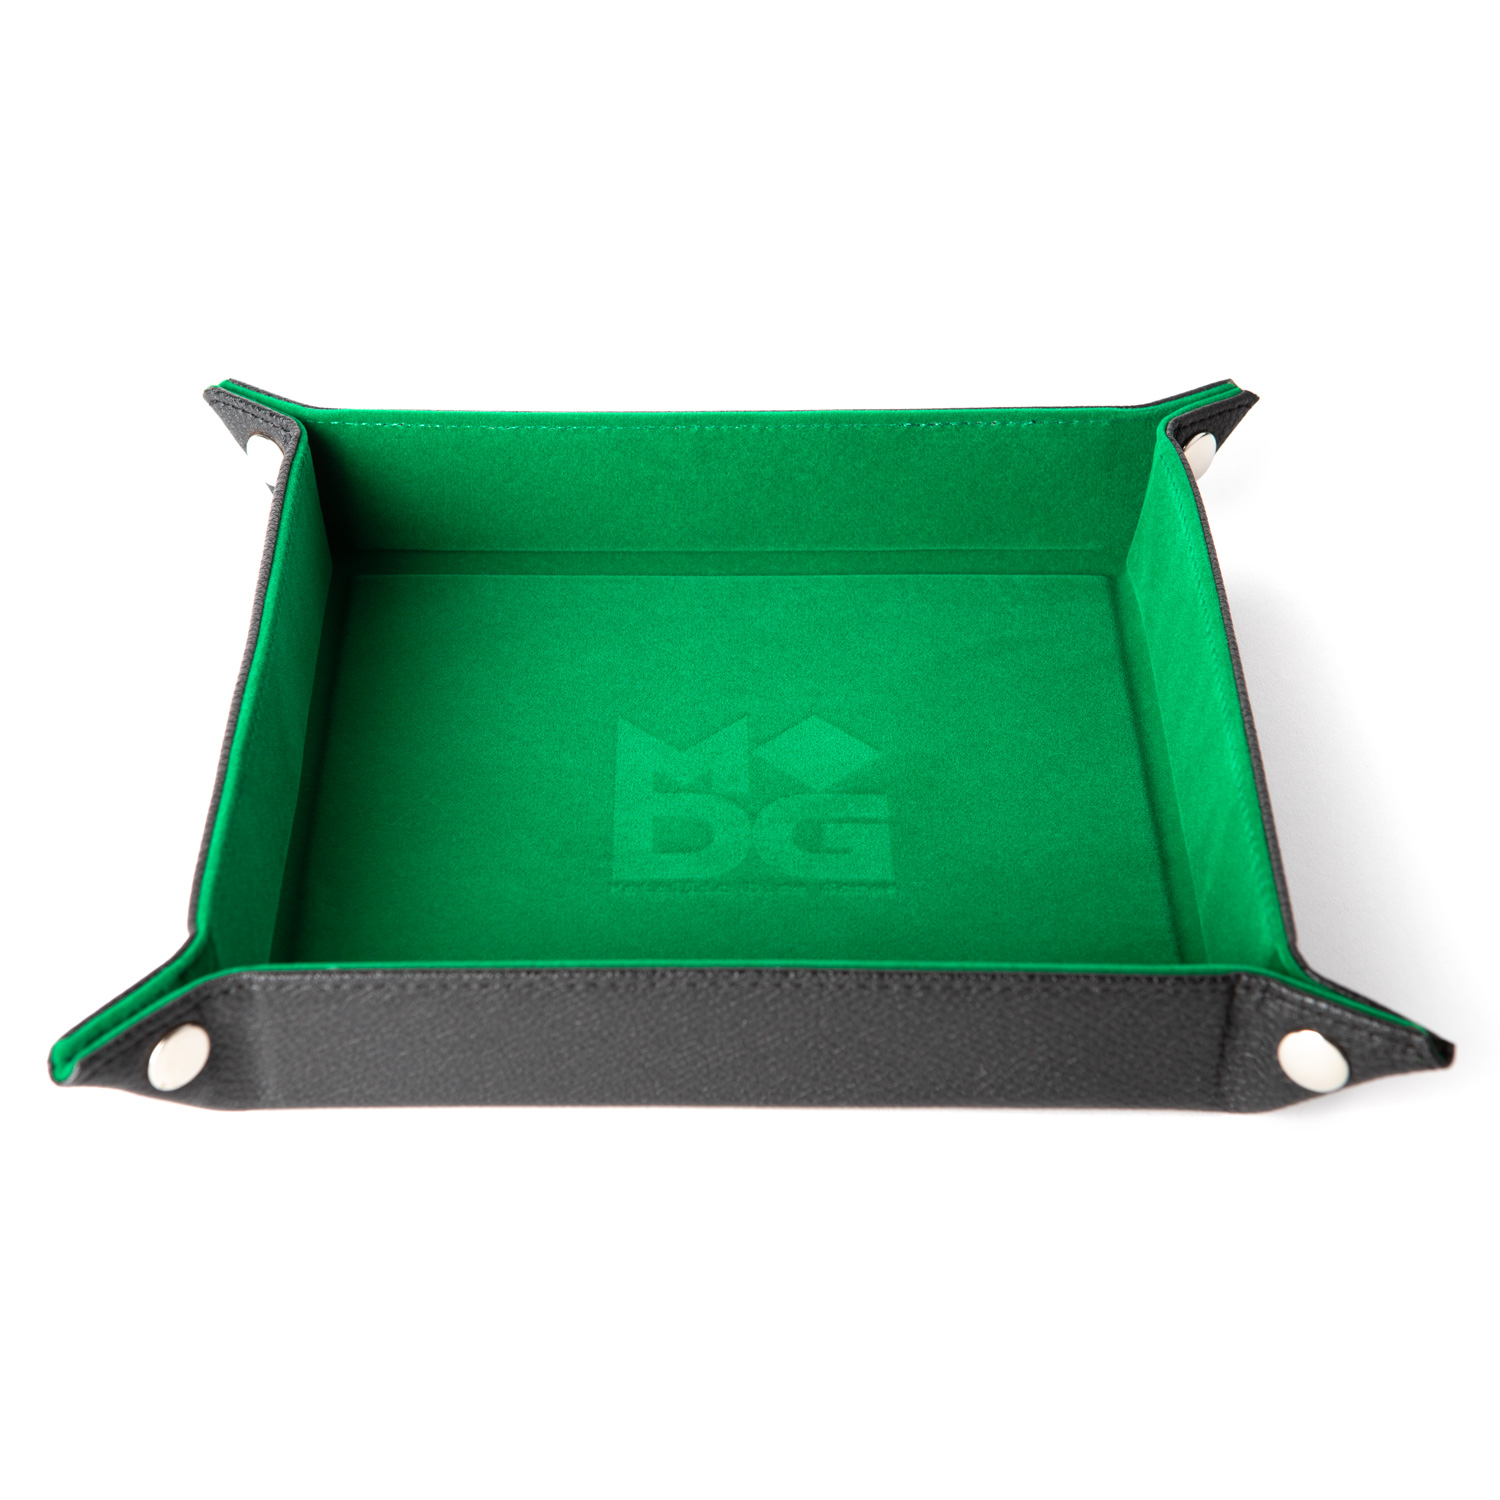 green dice tray